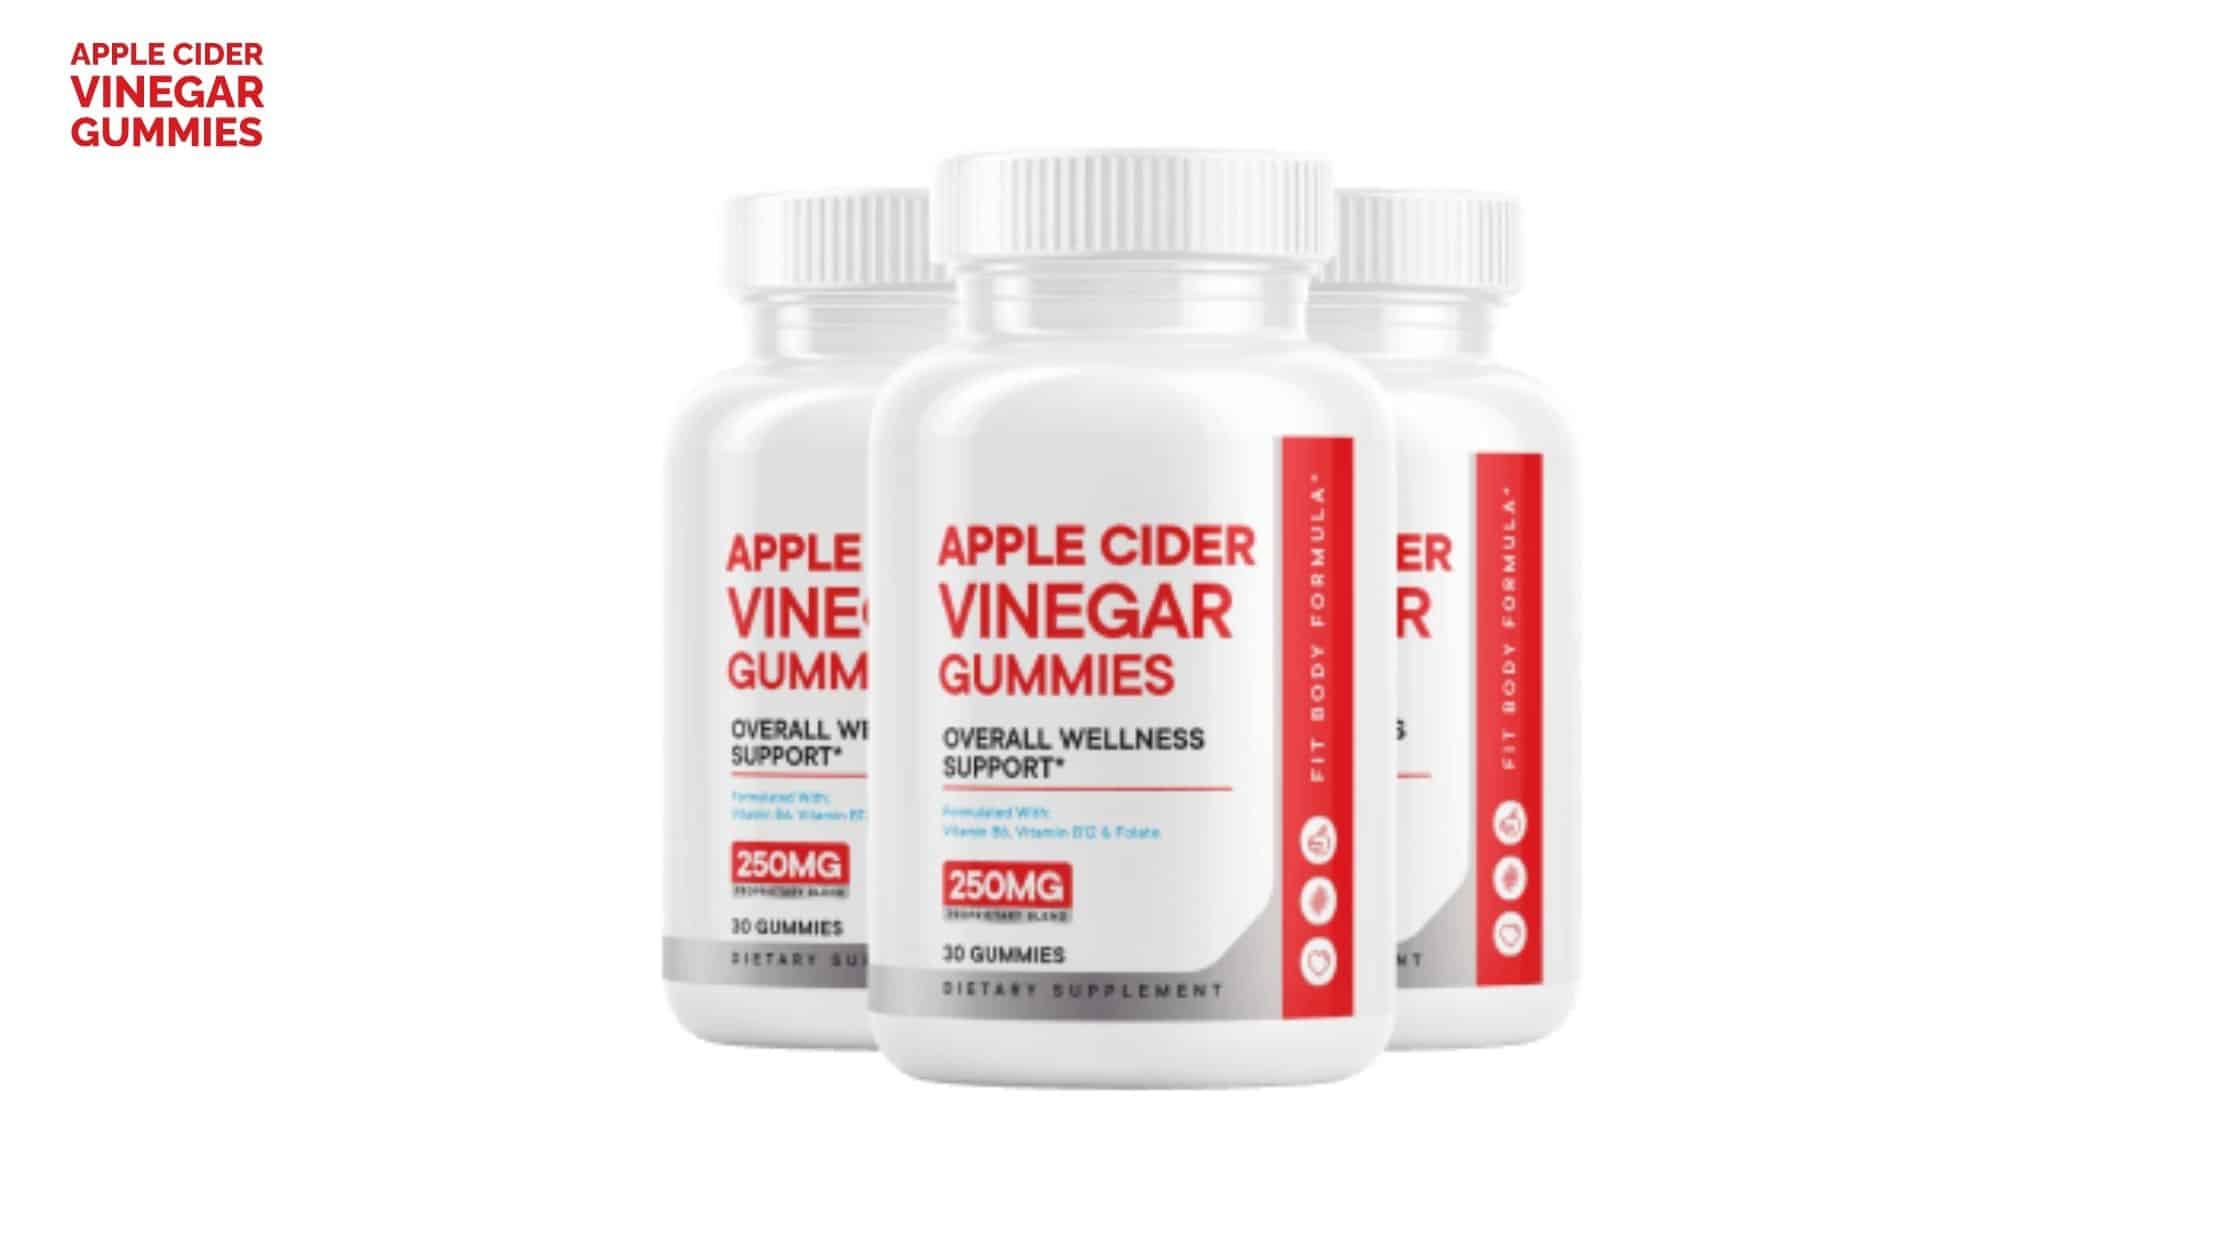 Apple Cider Vinegar Gummies Supplement